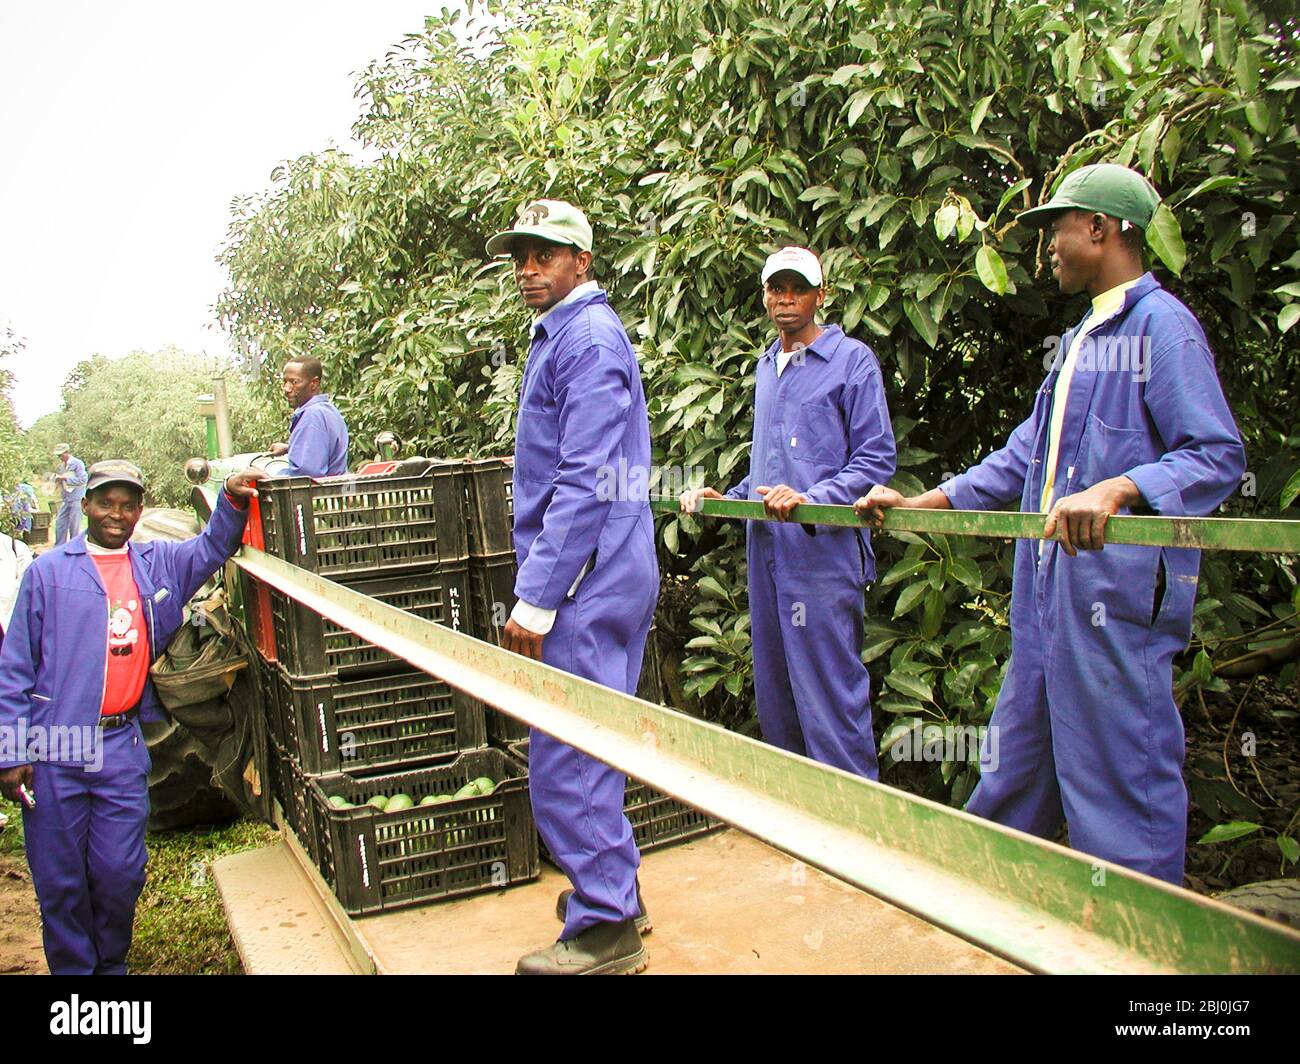 Arbeiter, die Avocados pflücken auf der Mataffin Farm, Nelspruit - Mpumalanga, Südafrika - Stockfoto